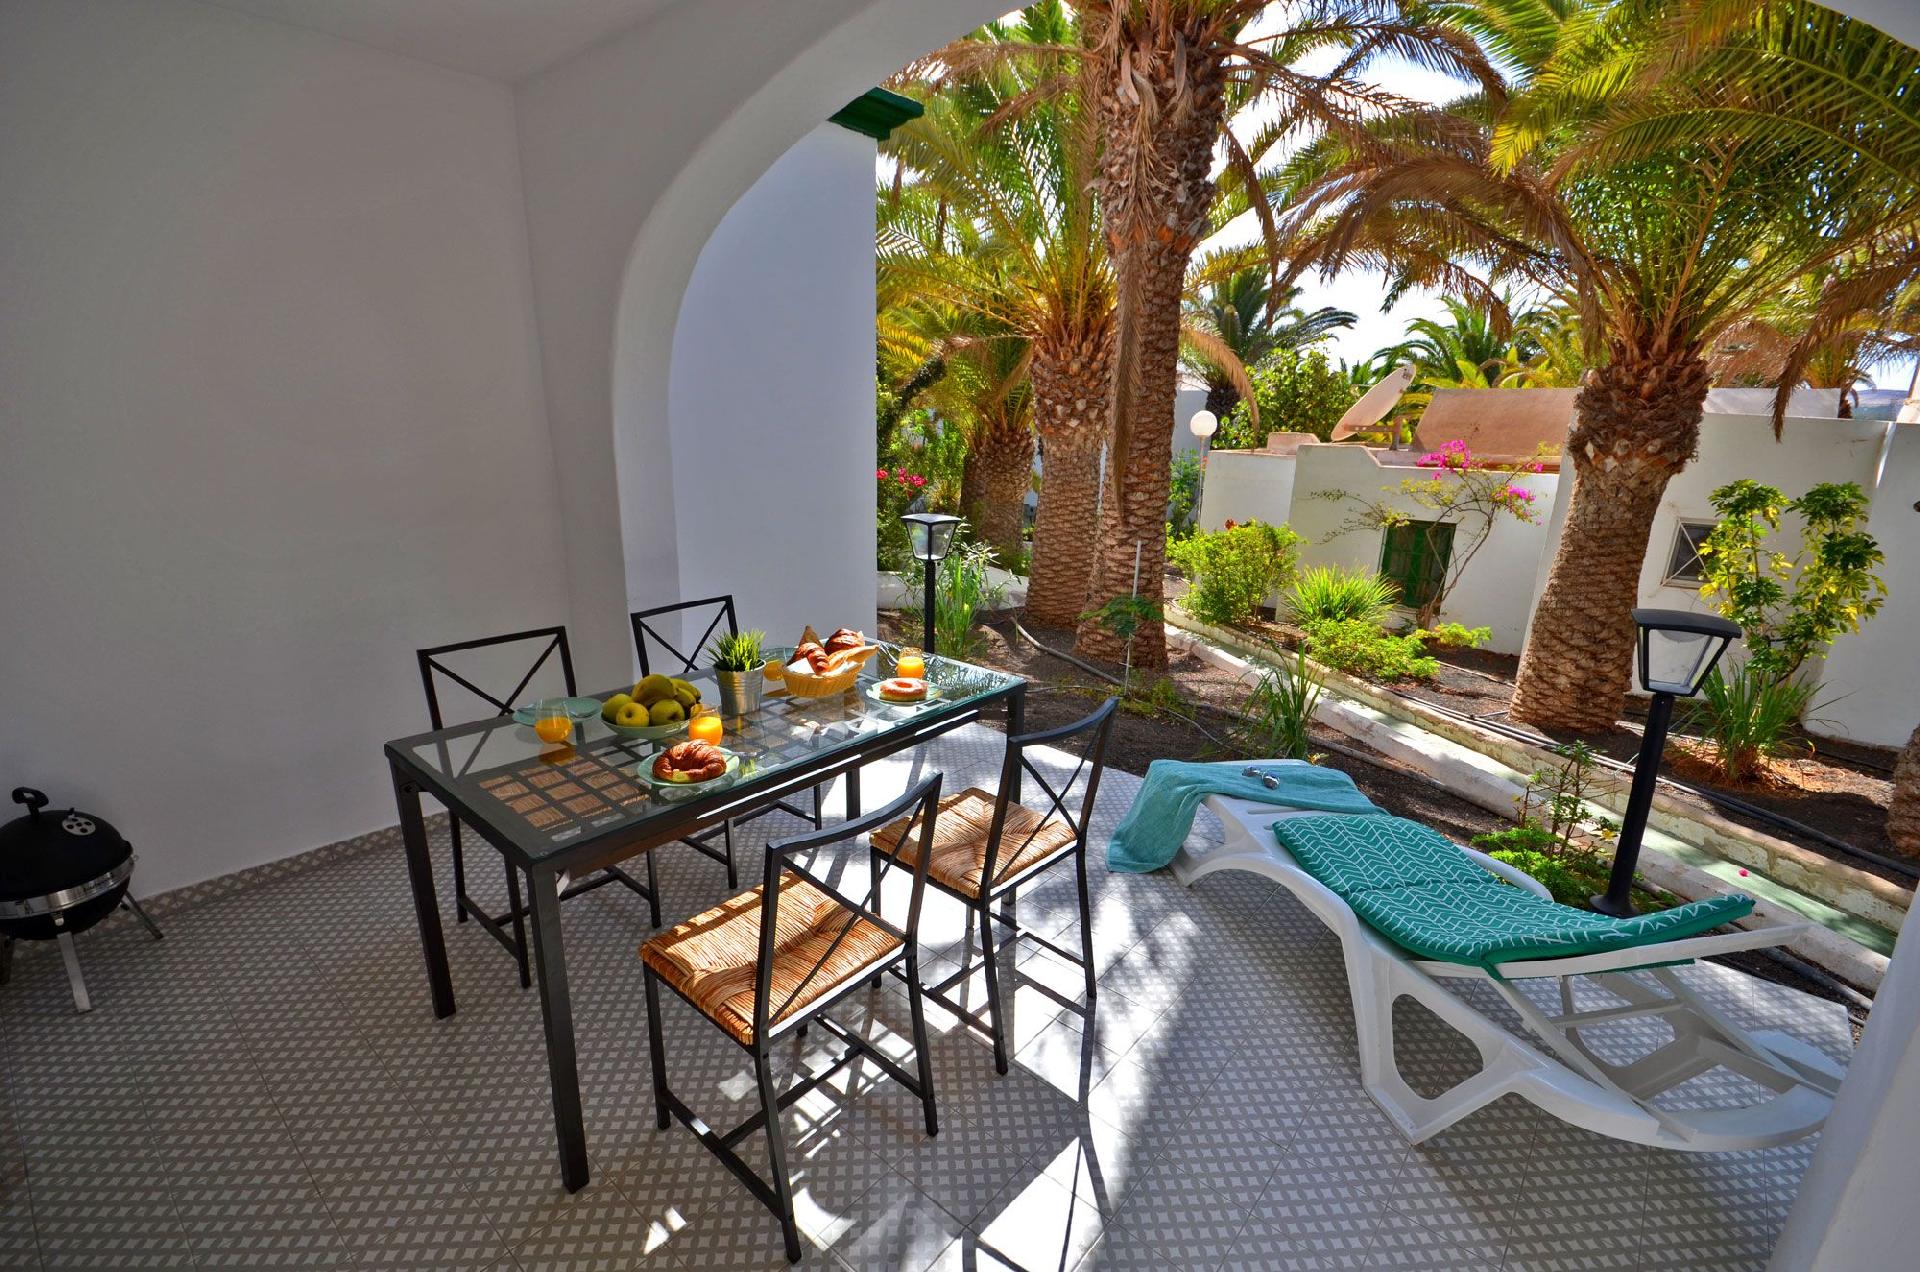 Appartement in Costa Calma mit Großer Terras Ferienhaus in Spanien